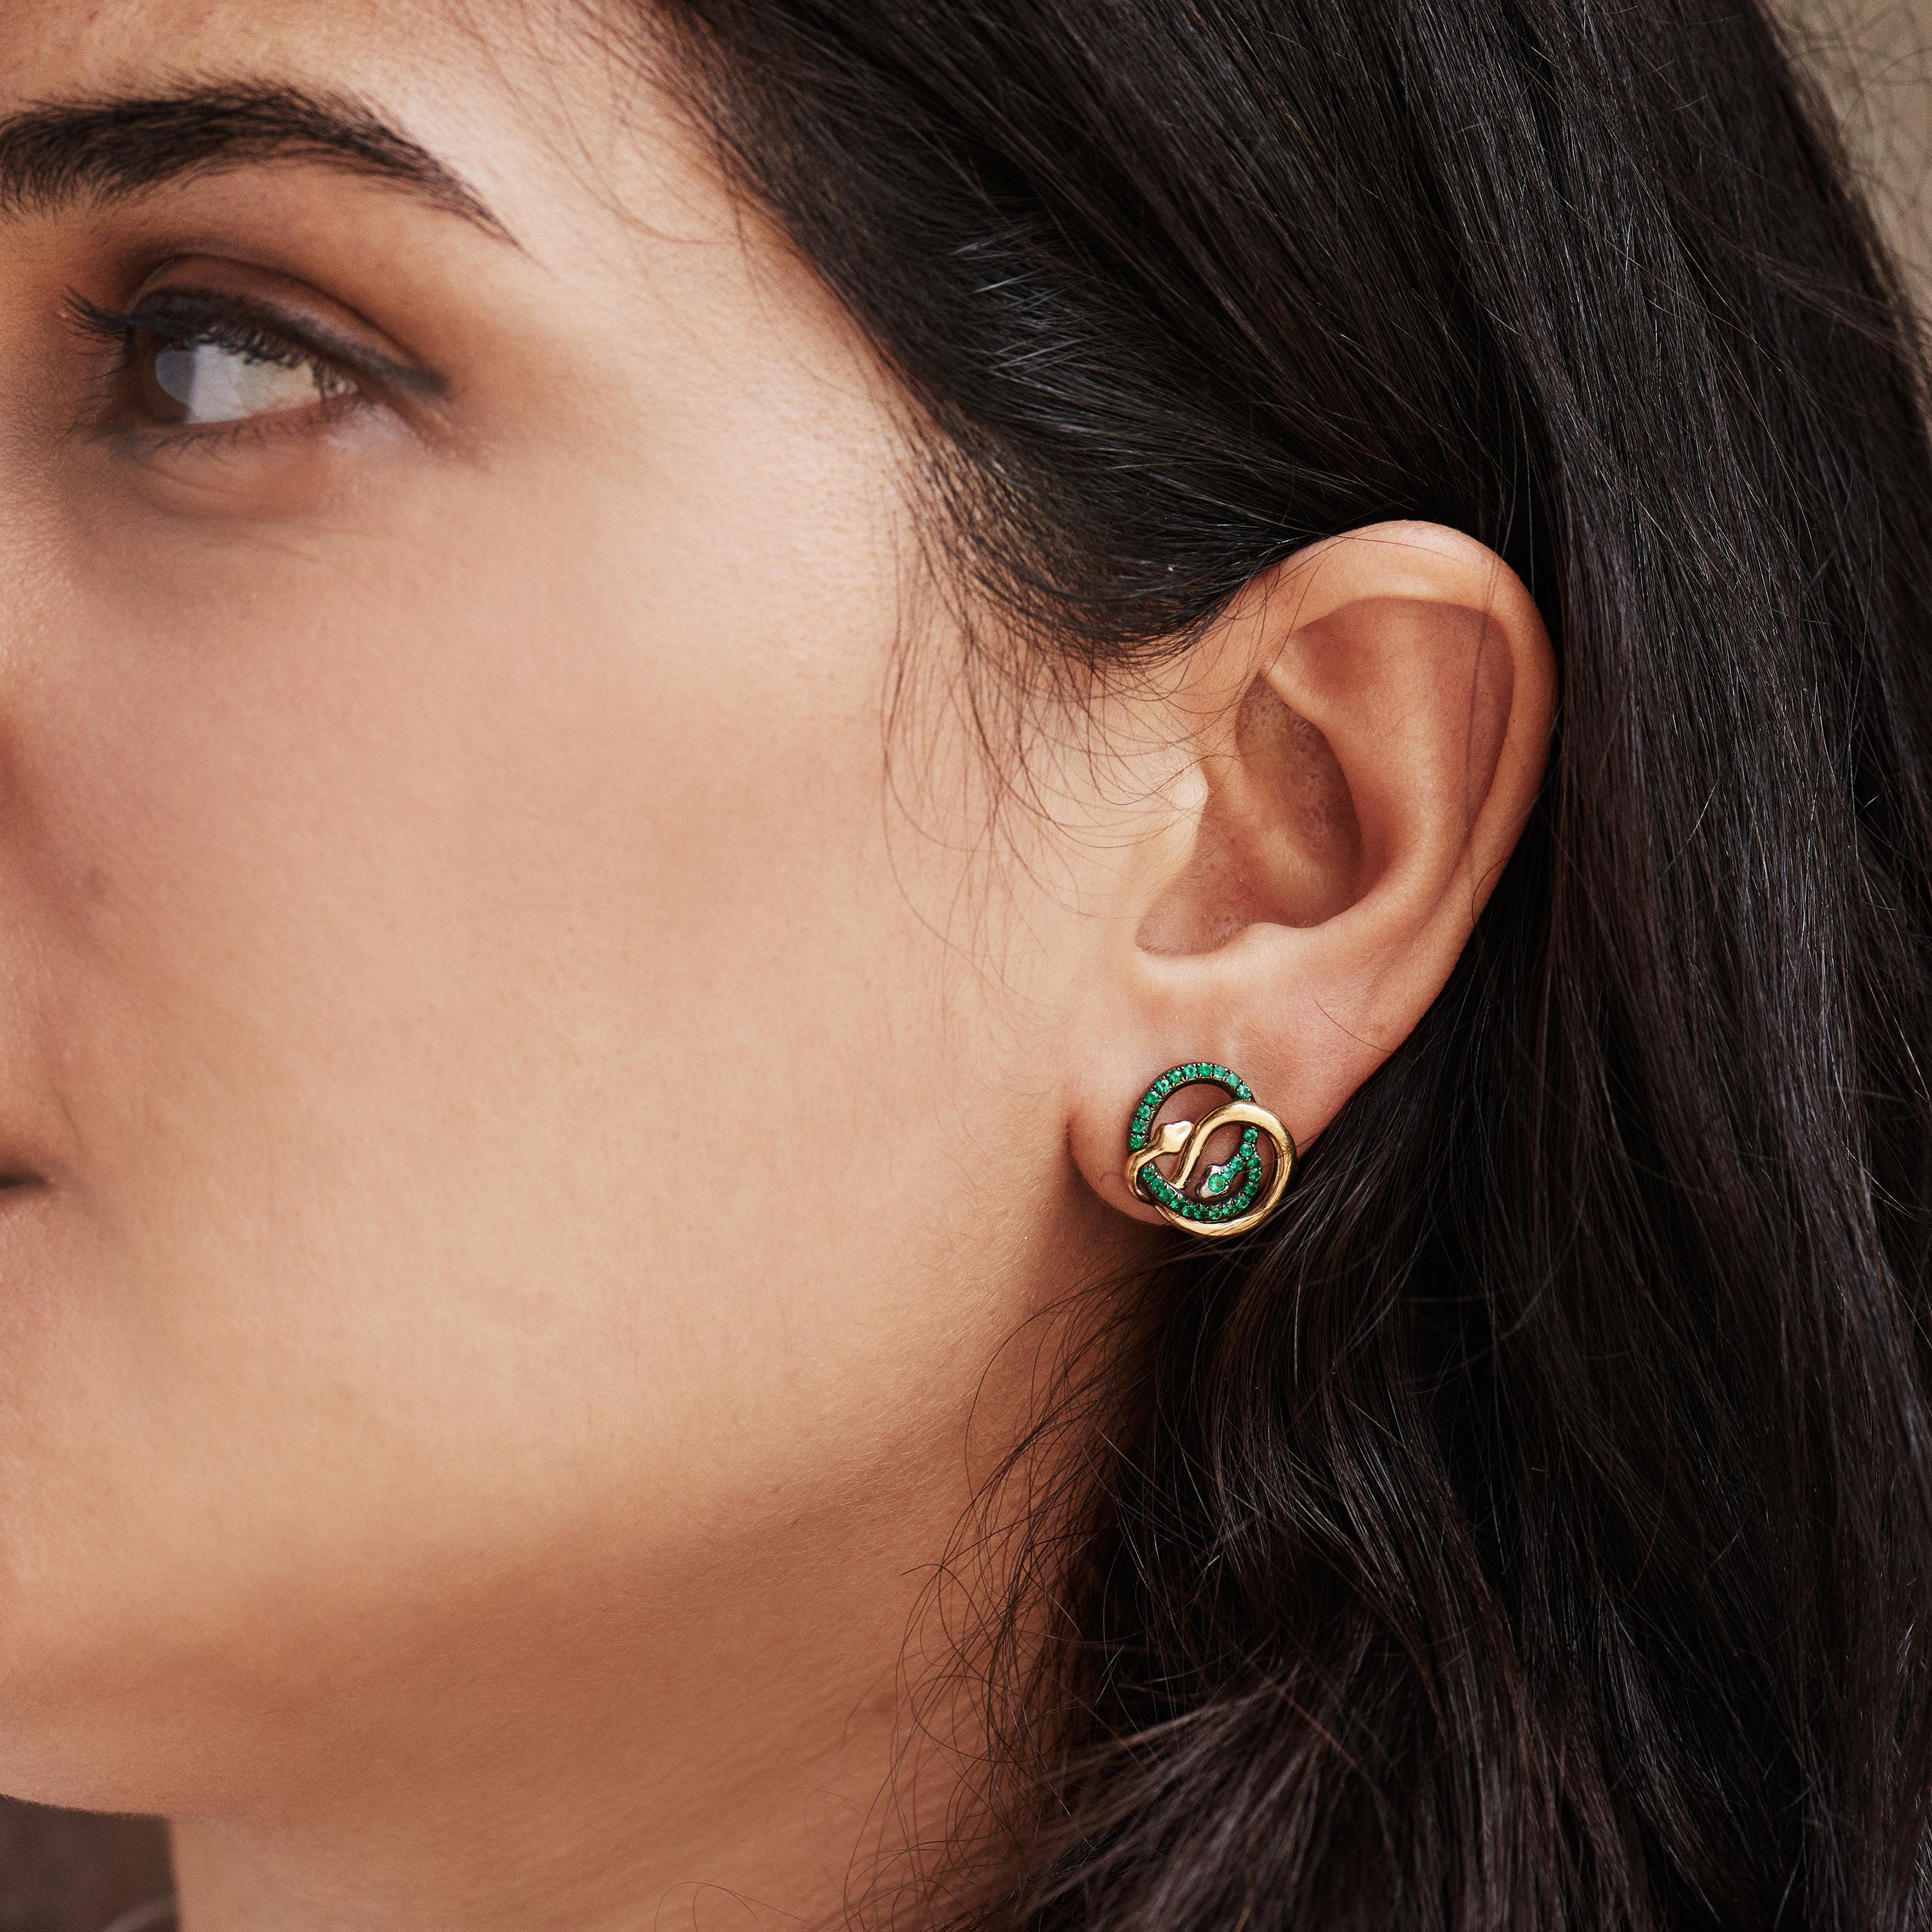 Die Sarpa-Ohrringe von AENEA Design sind von den Werken von Faberge und Cartier aus den 1920er Jahren inspiriert und wurden für das neue Jahrtausend angepasst.

Dieser elegante und filigrane Ohrstecker ist ein echter Blickfang.

Die fantastischen